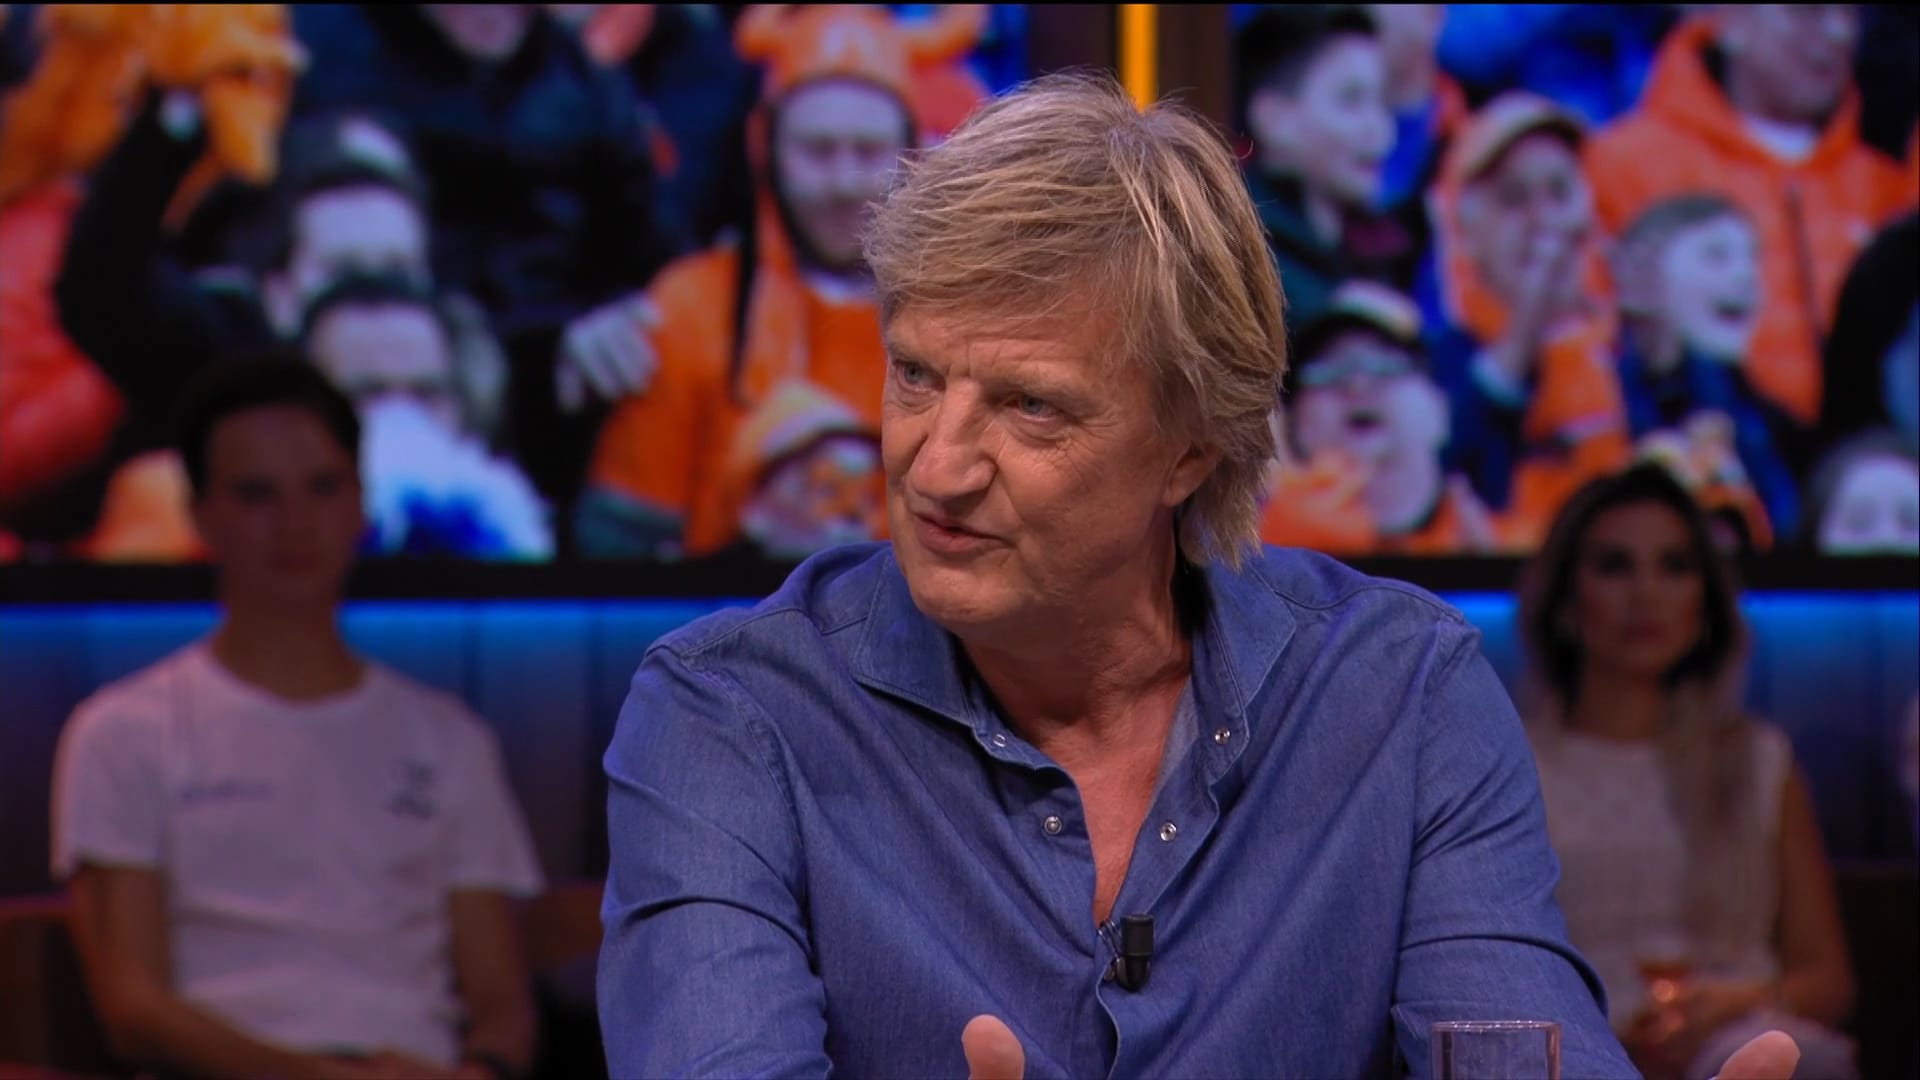 Wim verbaast zich over speeltijd Oranje-klant: 'Raar verhaal'